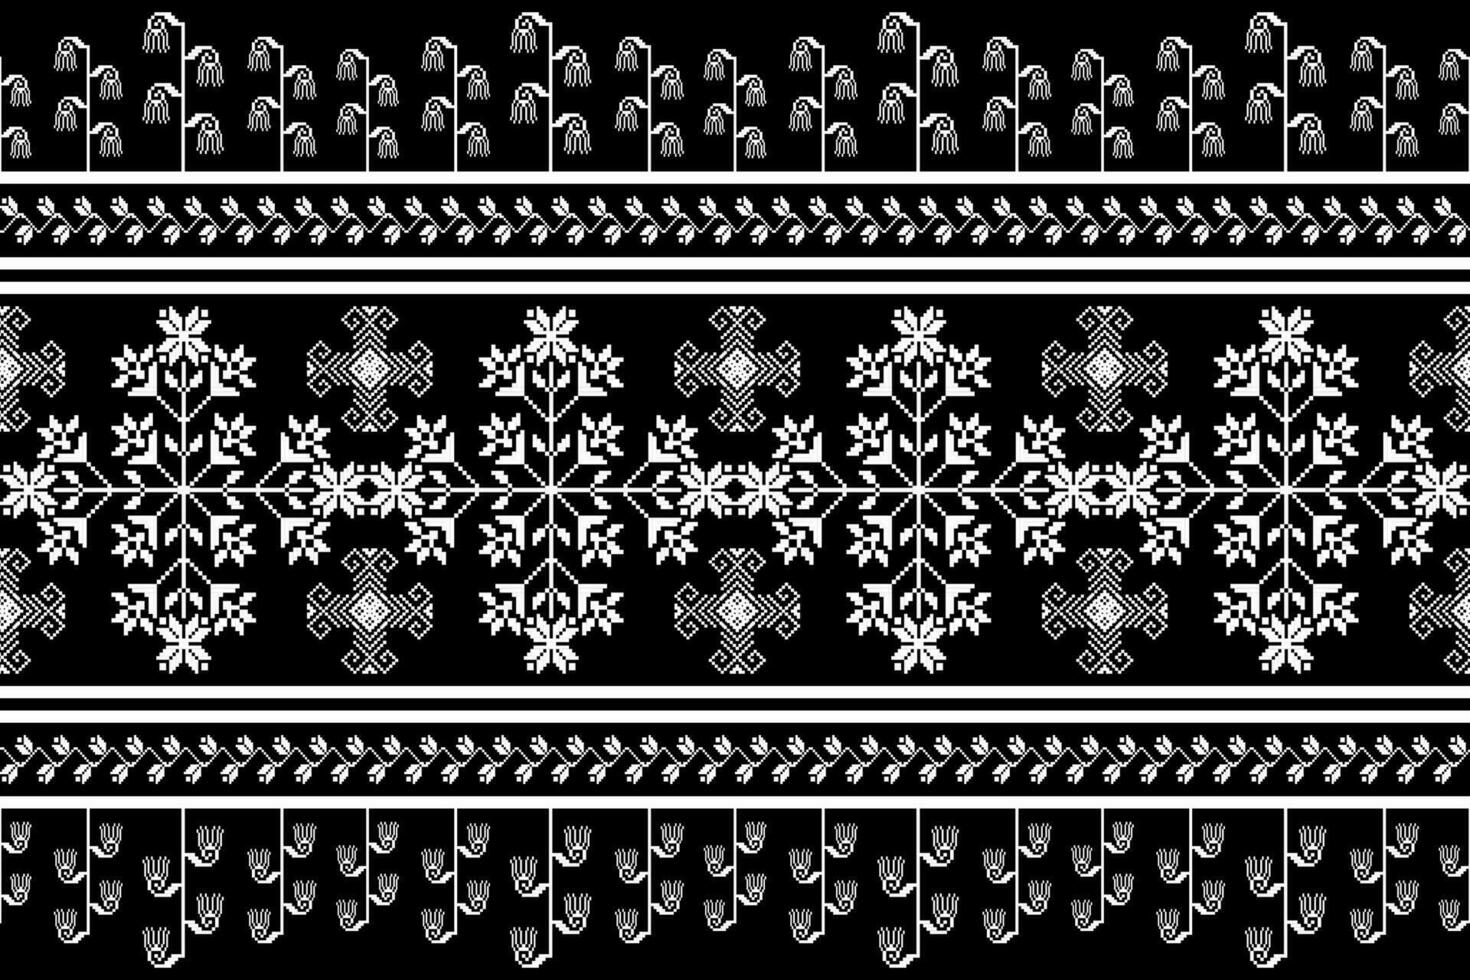 floral traverser point broderie sur blanc arrière-plan.géométrique ethnique Oriental sans couture modèle traditionnel.aztèque style abstrait vecteur illustration.design pour texture, tissu, vêtements, emballage, paréo.